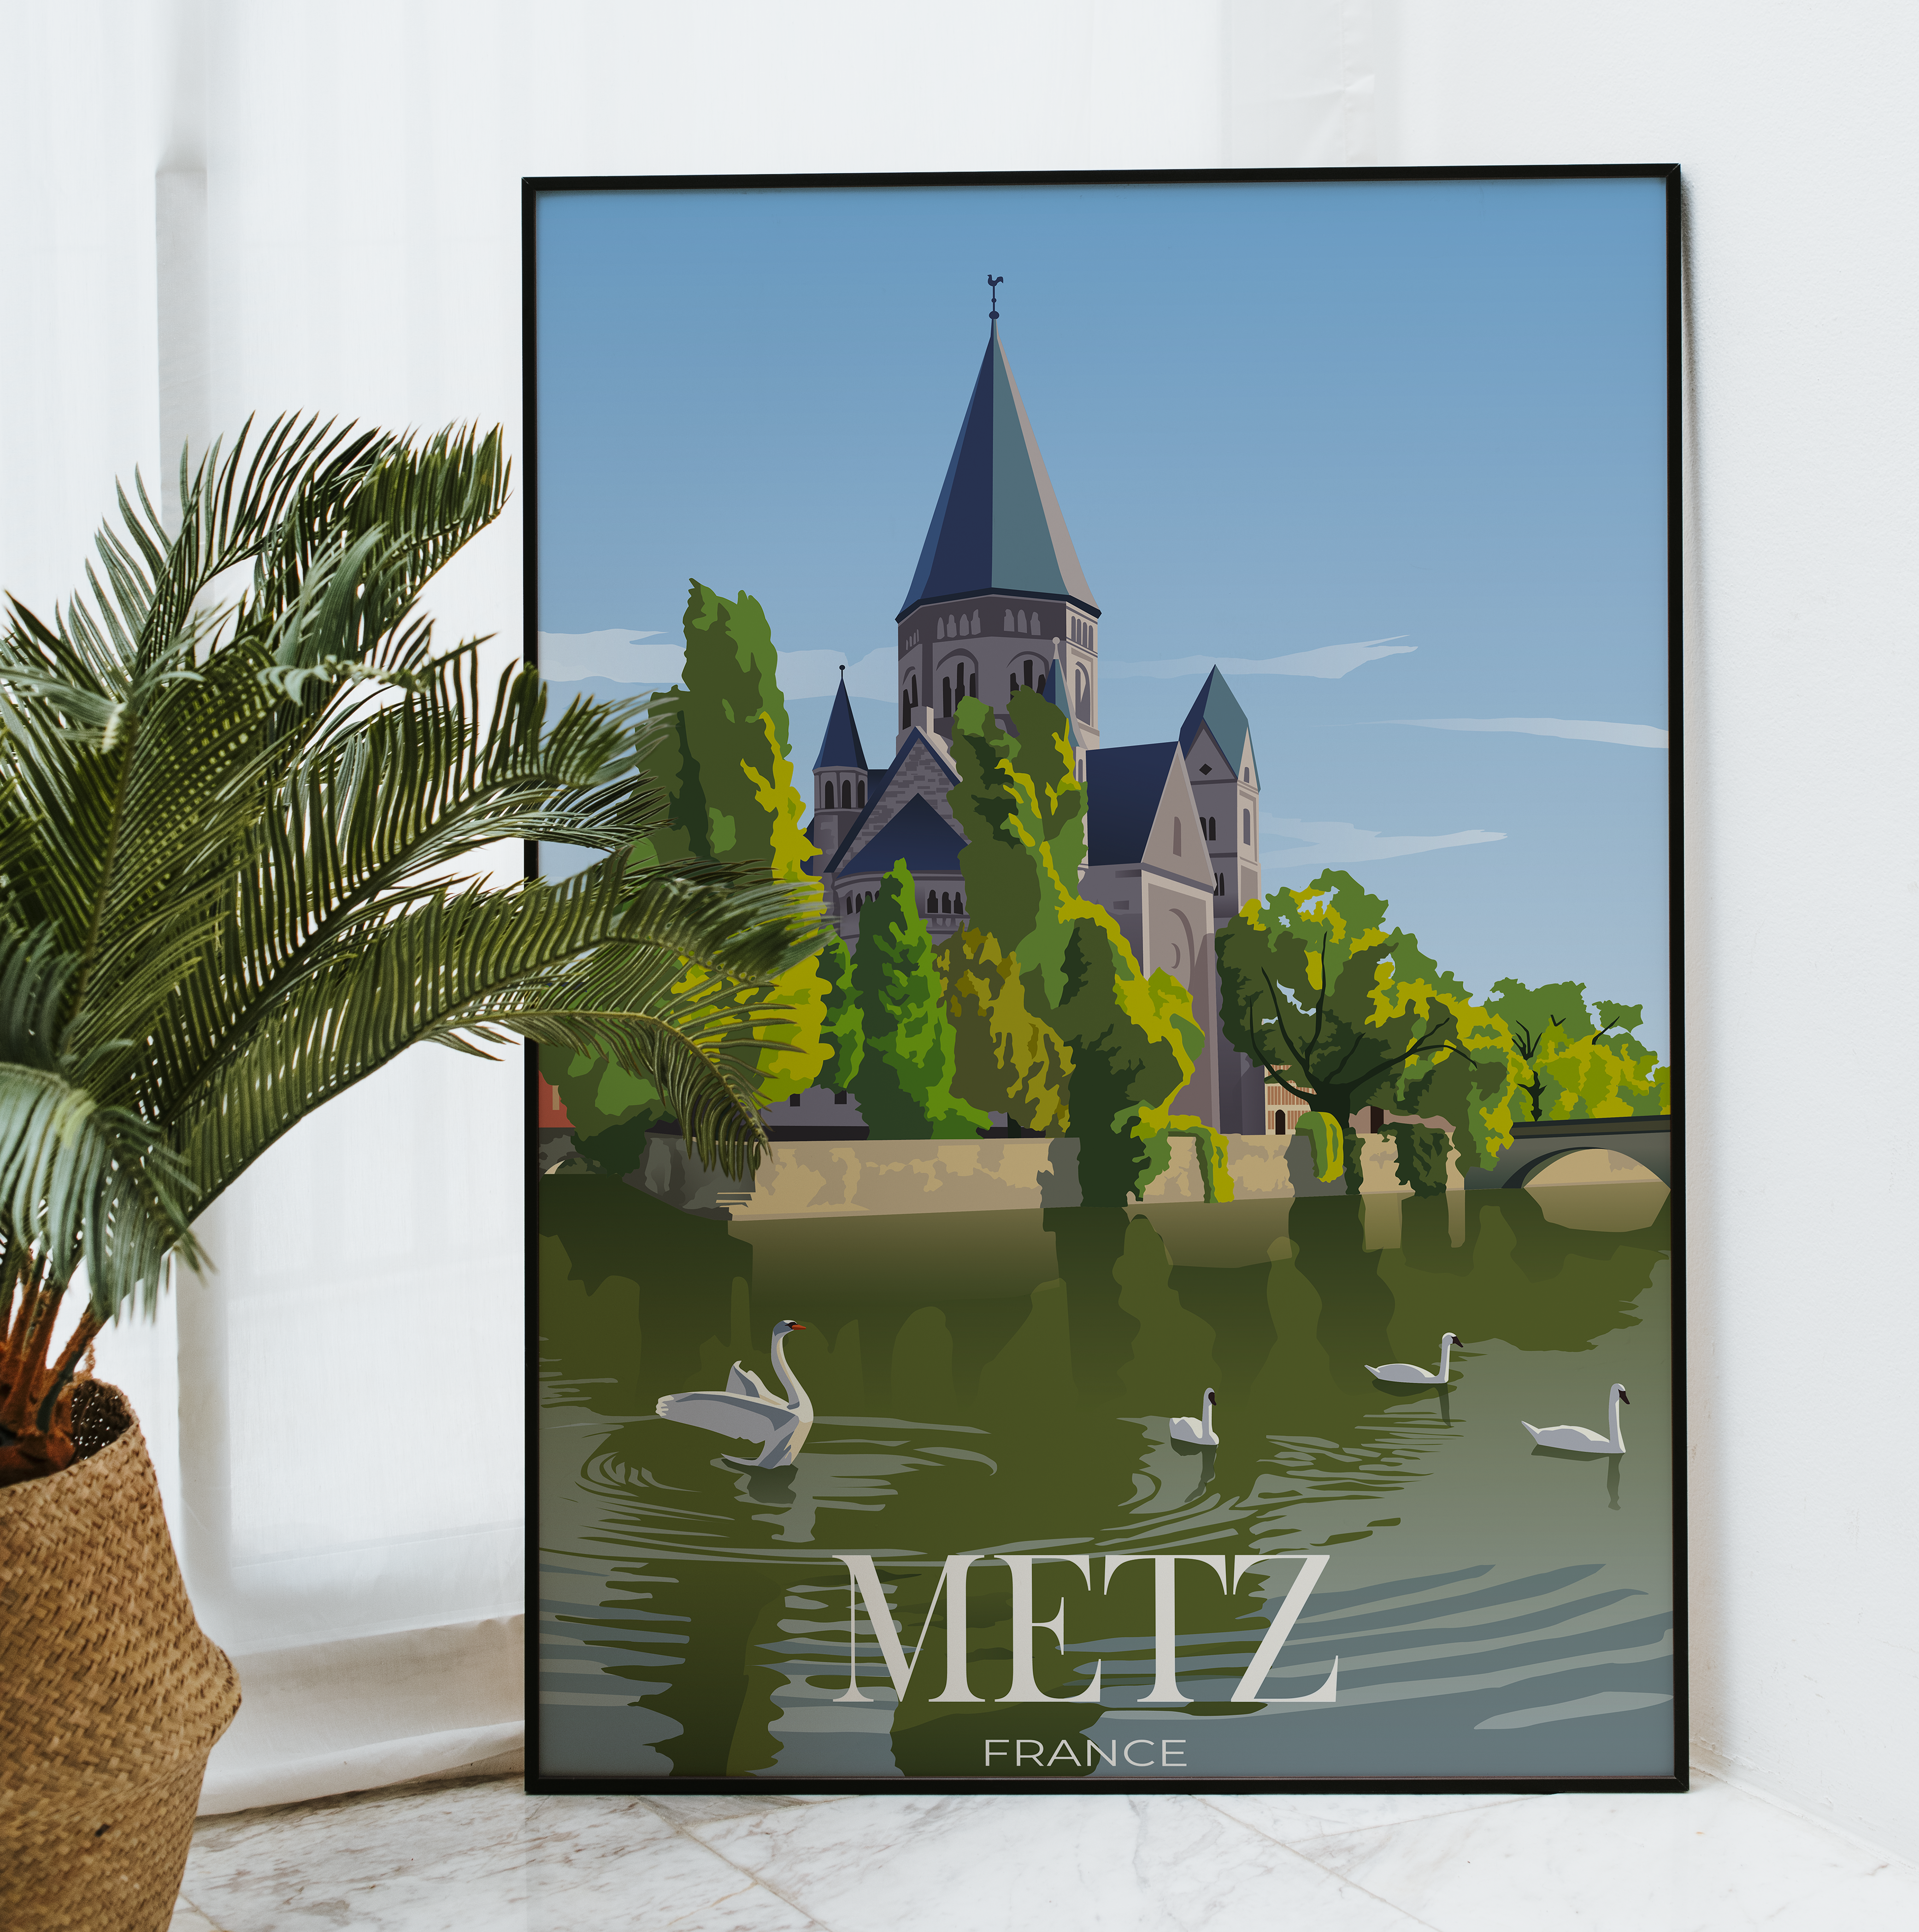 Affiche Metz